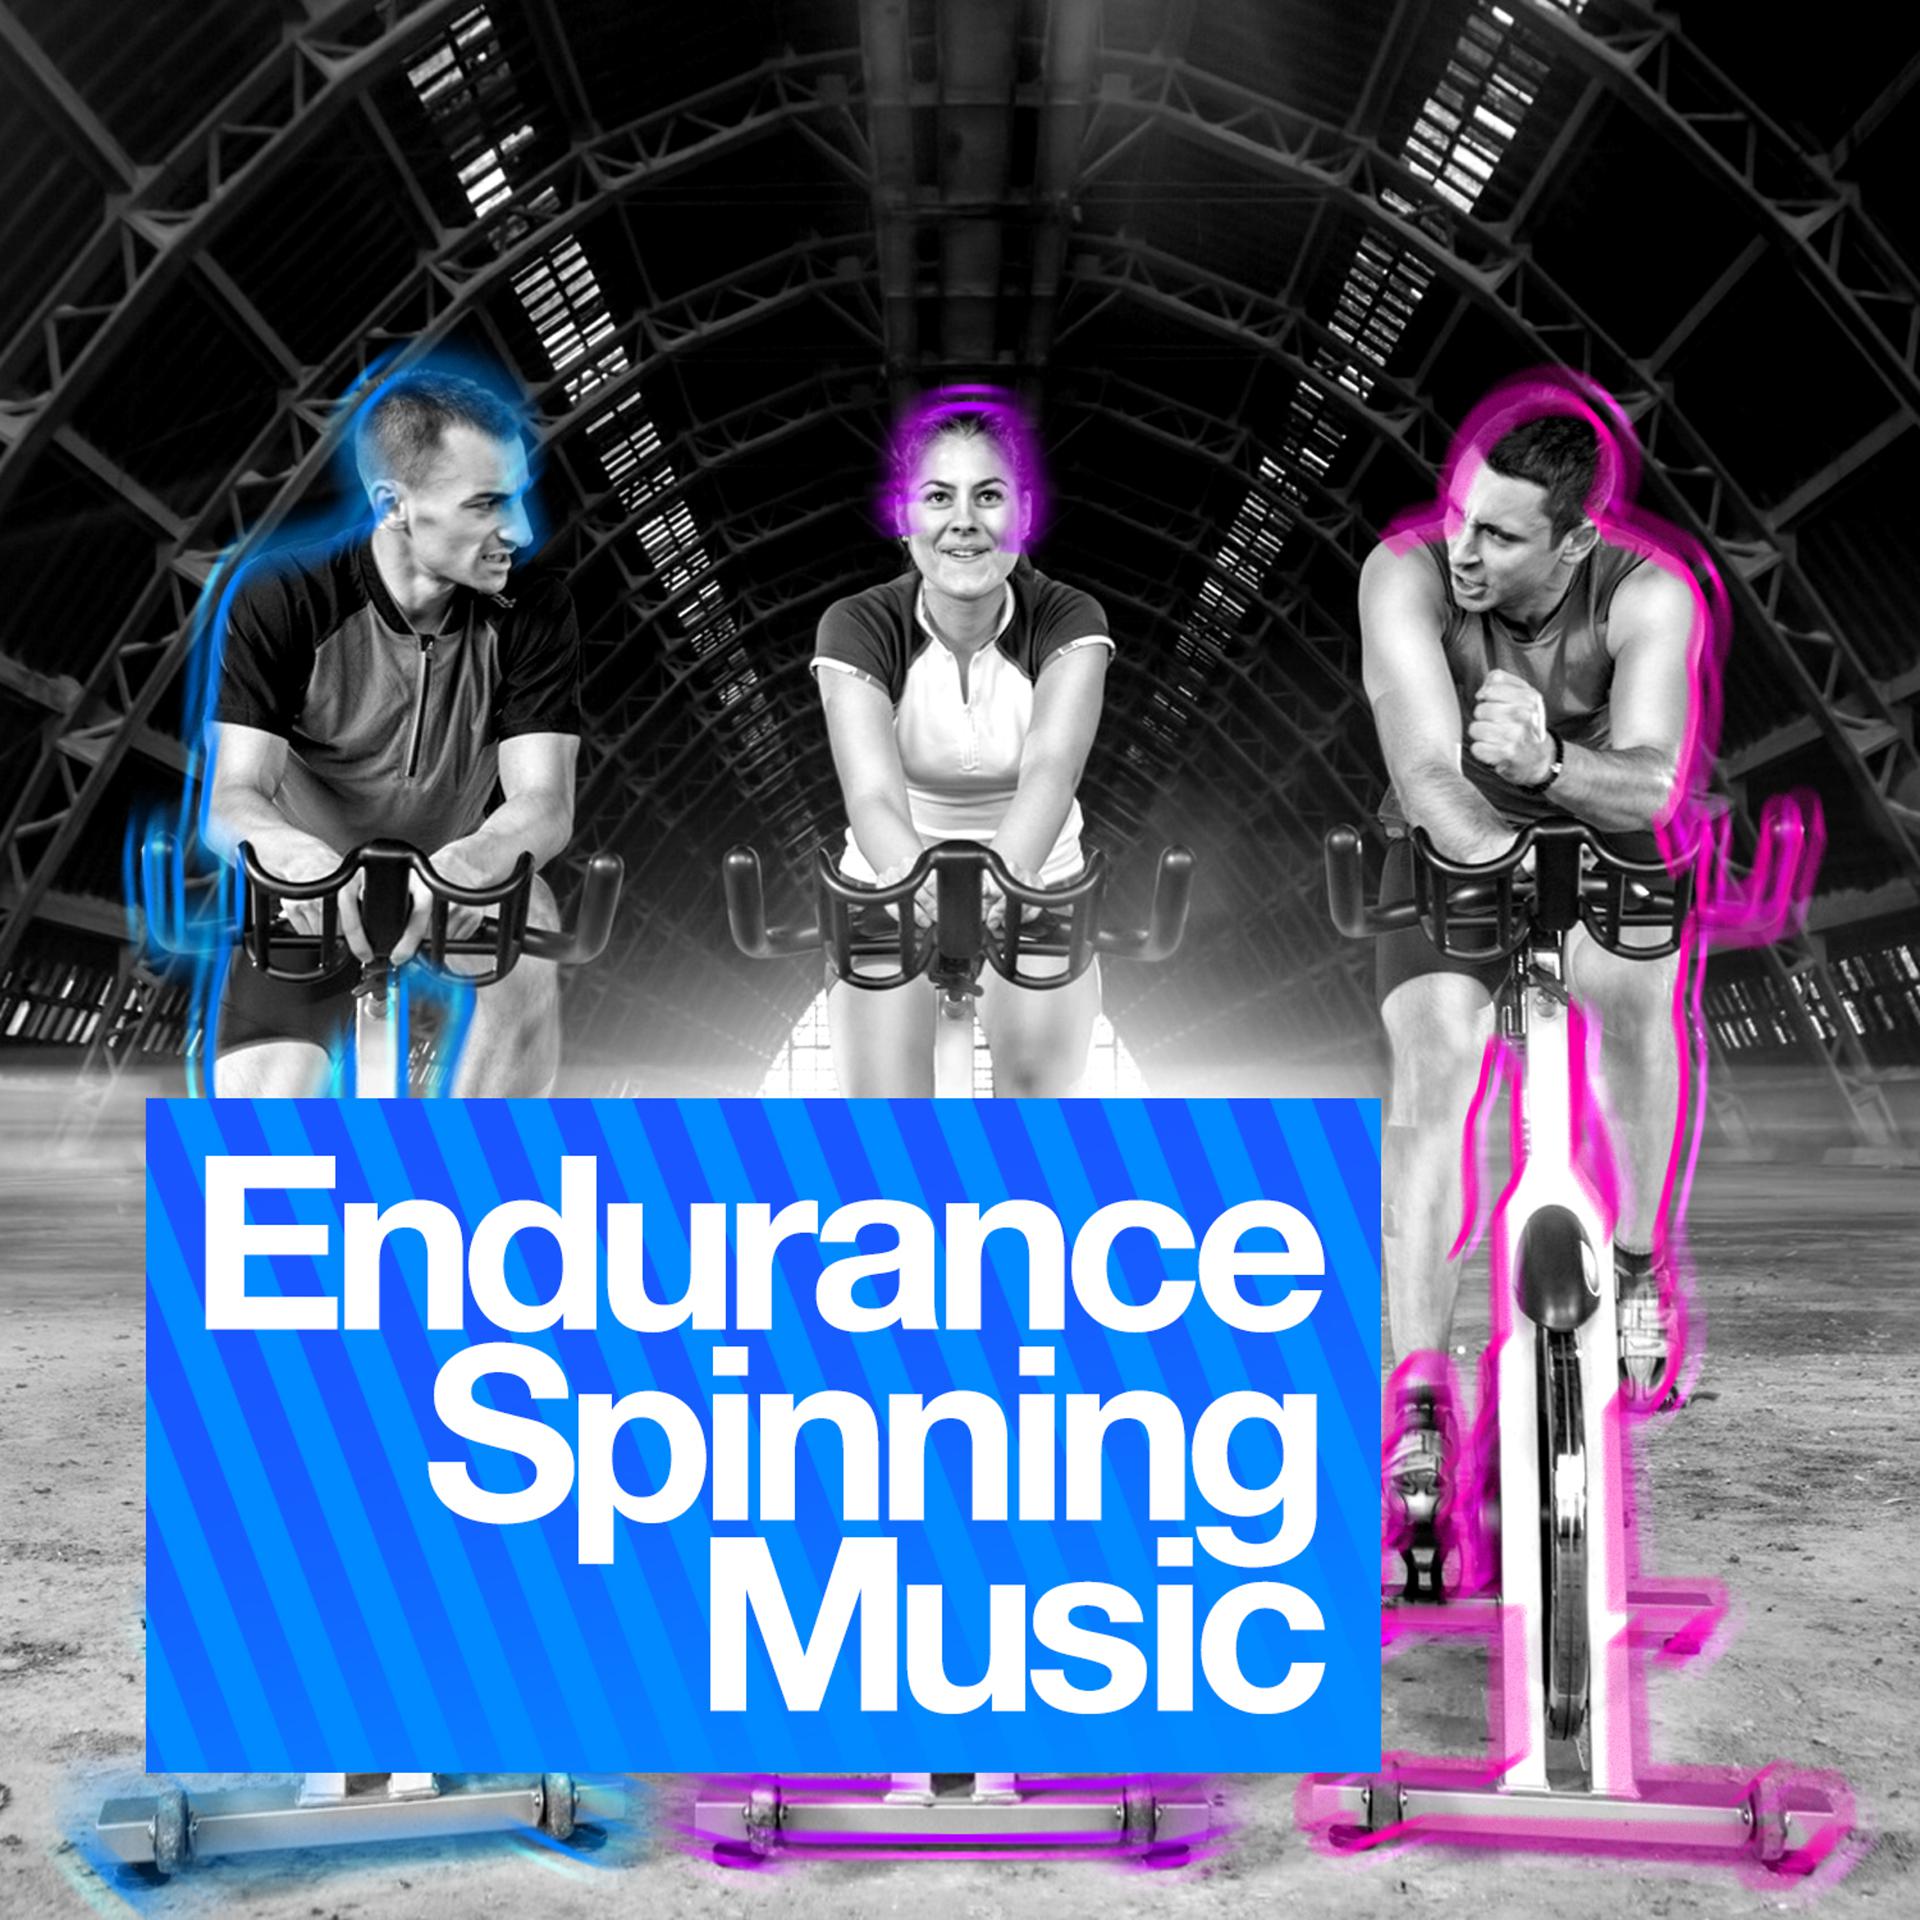 Spinning музыка. Spin музыка. Spinning Endurance фитнес Хаус что это. Endurance музыка из шоу. D-Trax - Spinning around.